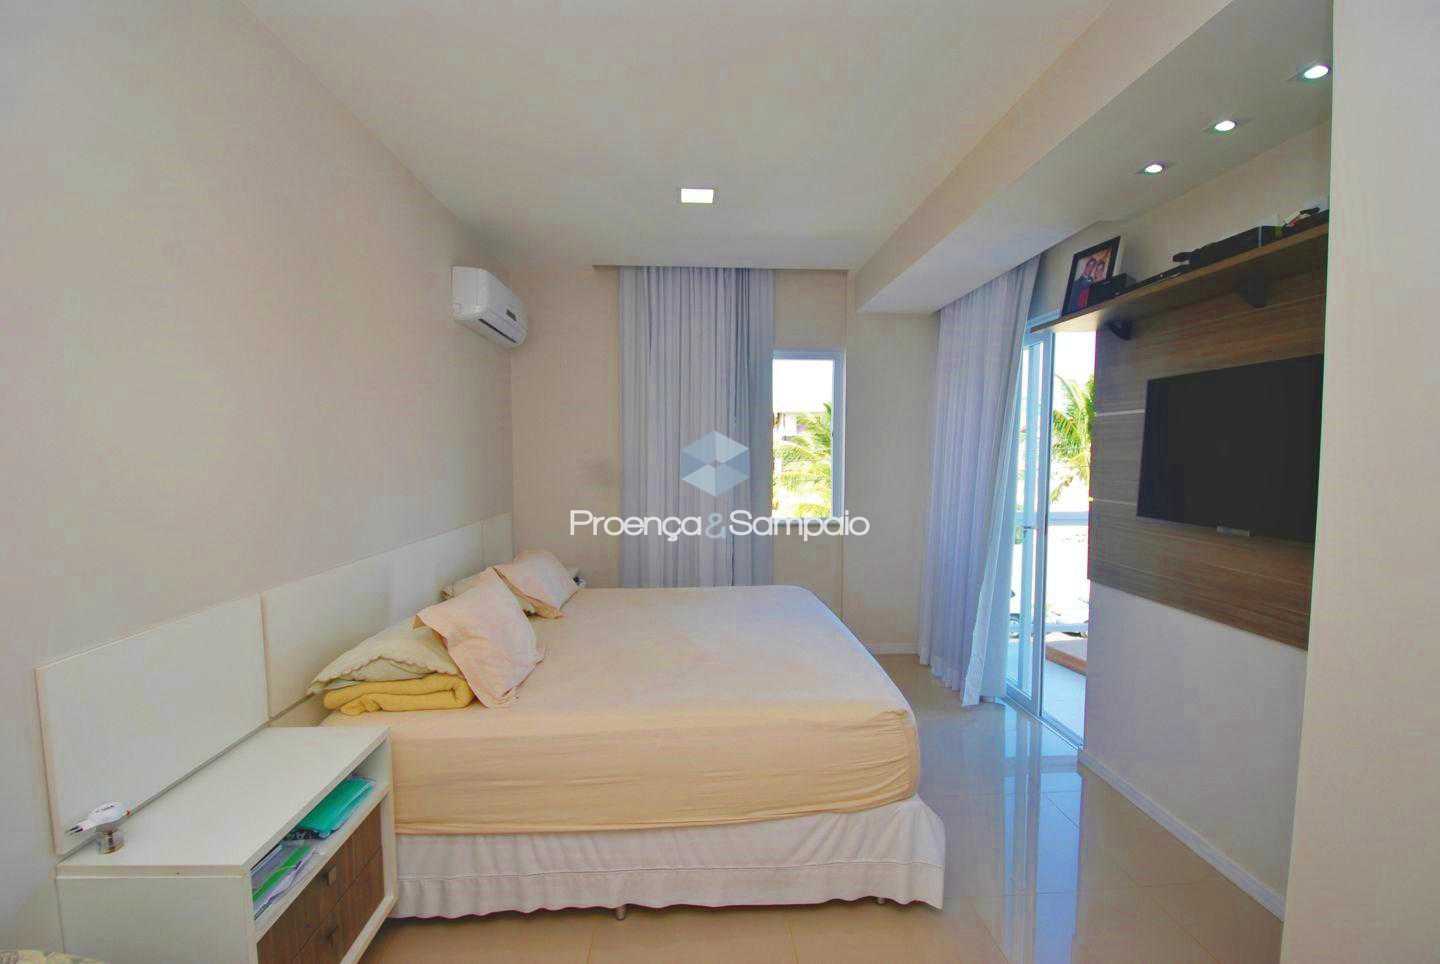 FOTO19 - Casa em Condomínio 4 quartos à venda Lauro de Freitas,BA - R$ 910.000 - PSCN40024 - 21